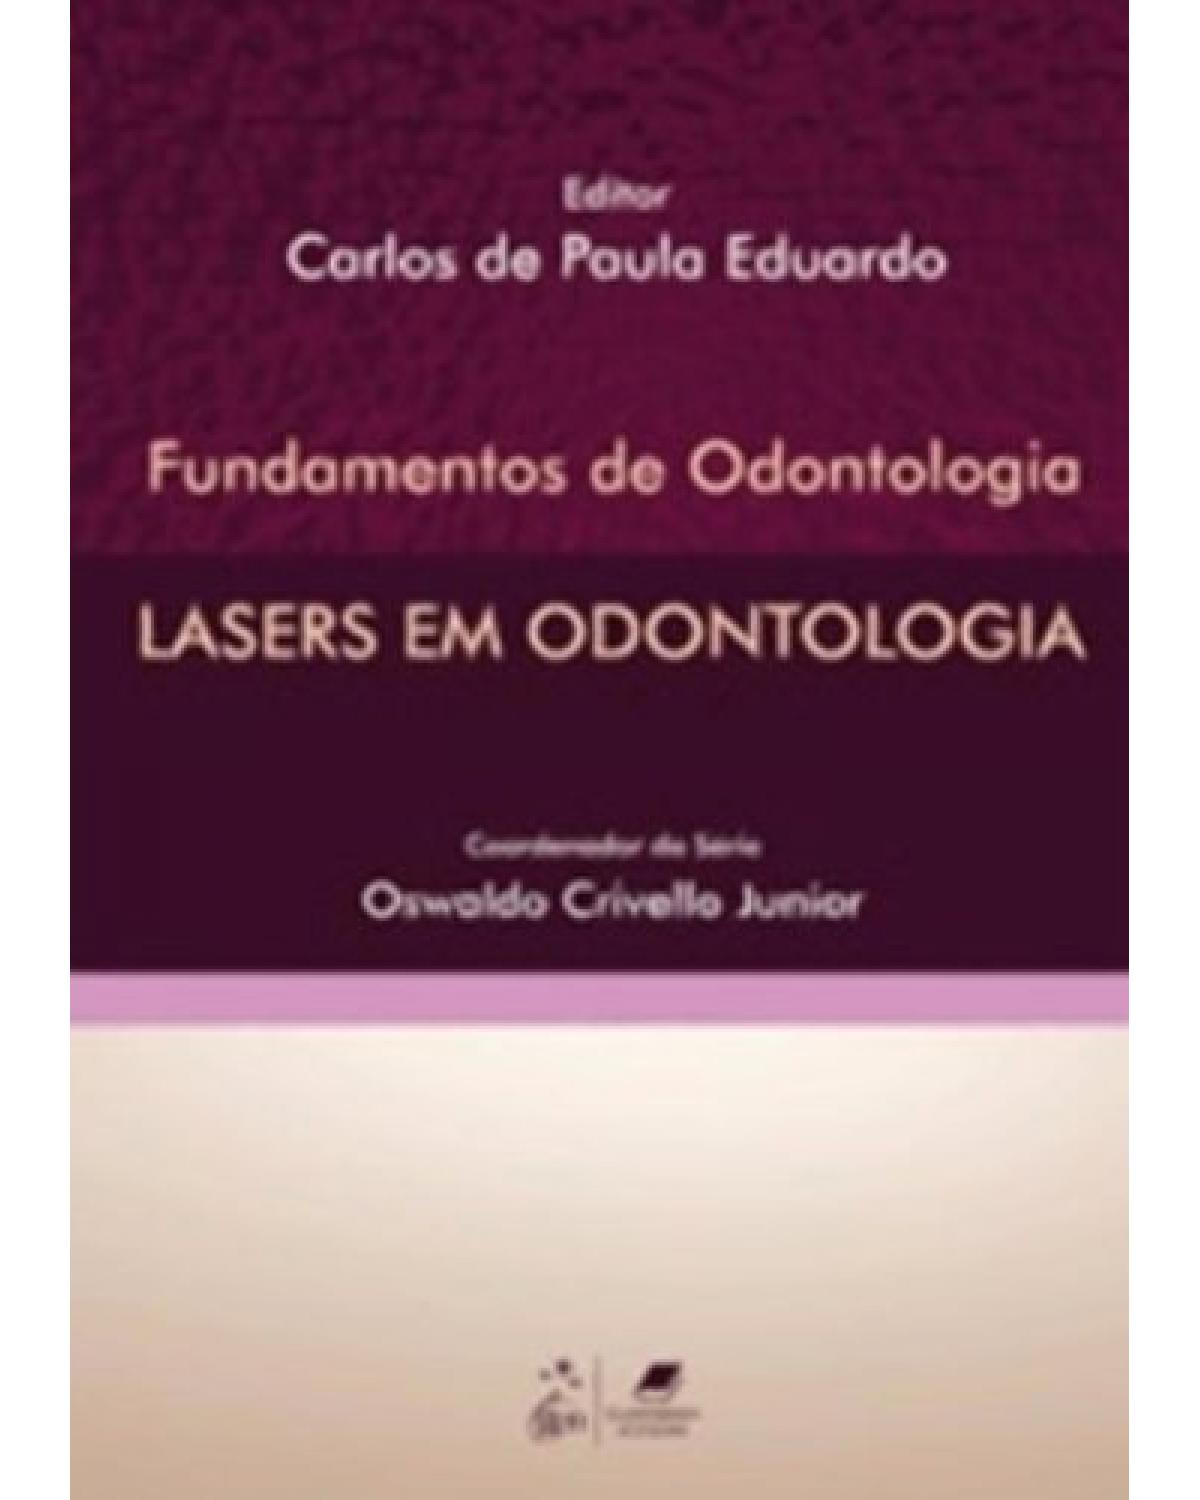 Lasers em odontologia - 1ª Edição | 2010